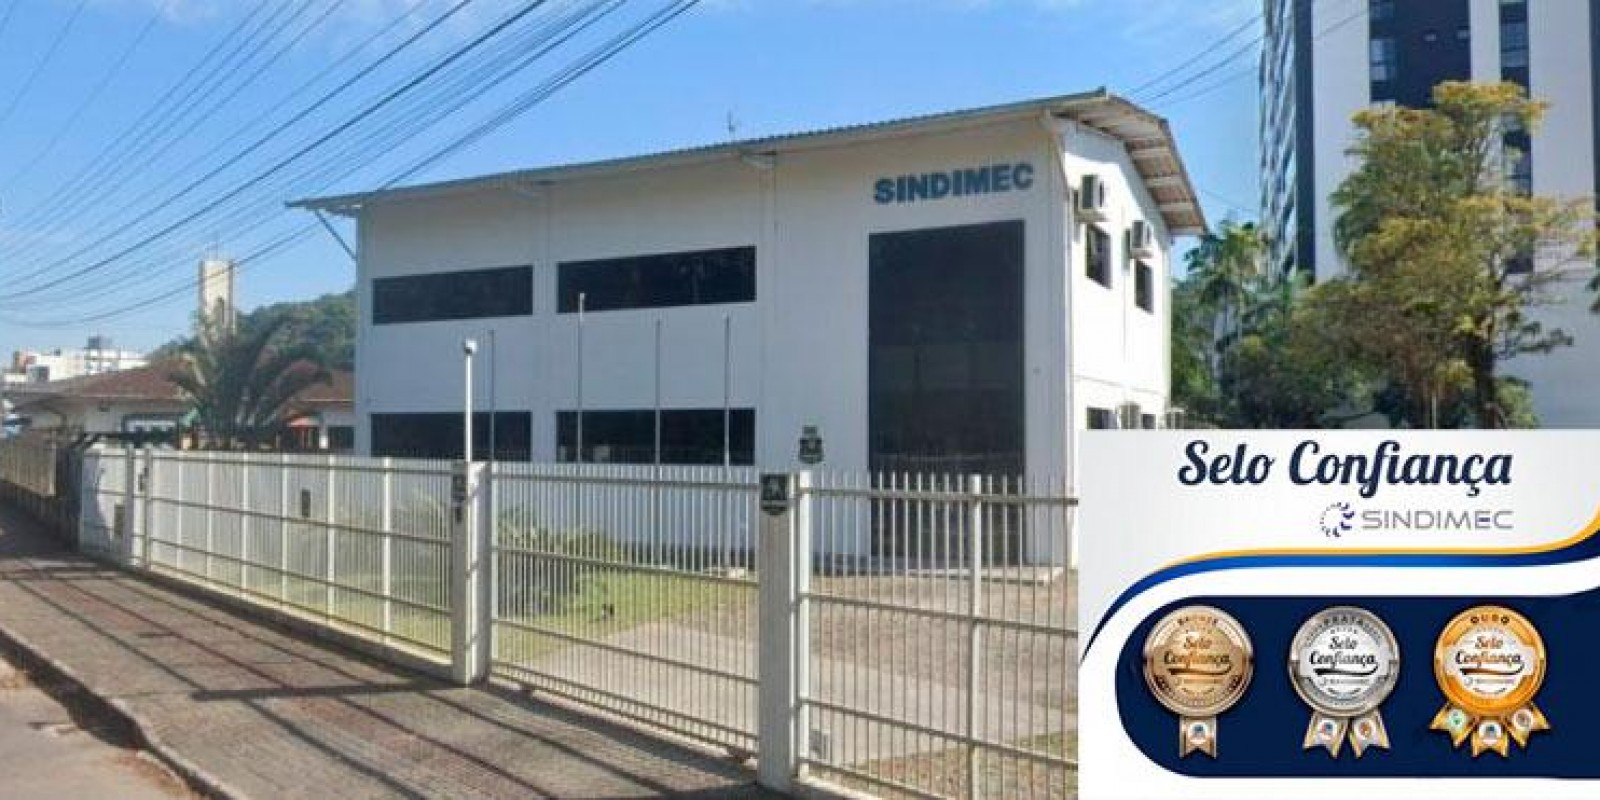 Lançamento e entrega do “Selo Confiança Sindimec” reúne lideranças nesta quarta (10) em Joinville